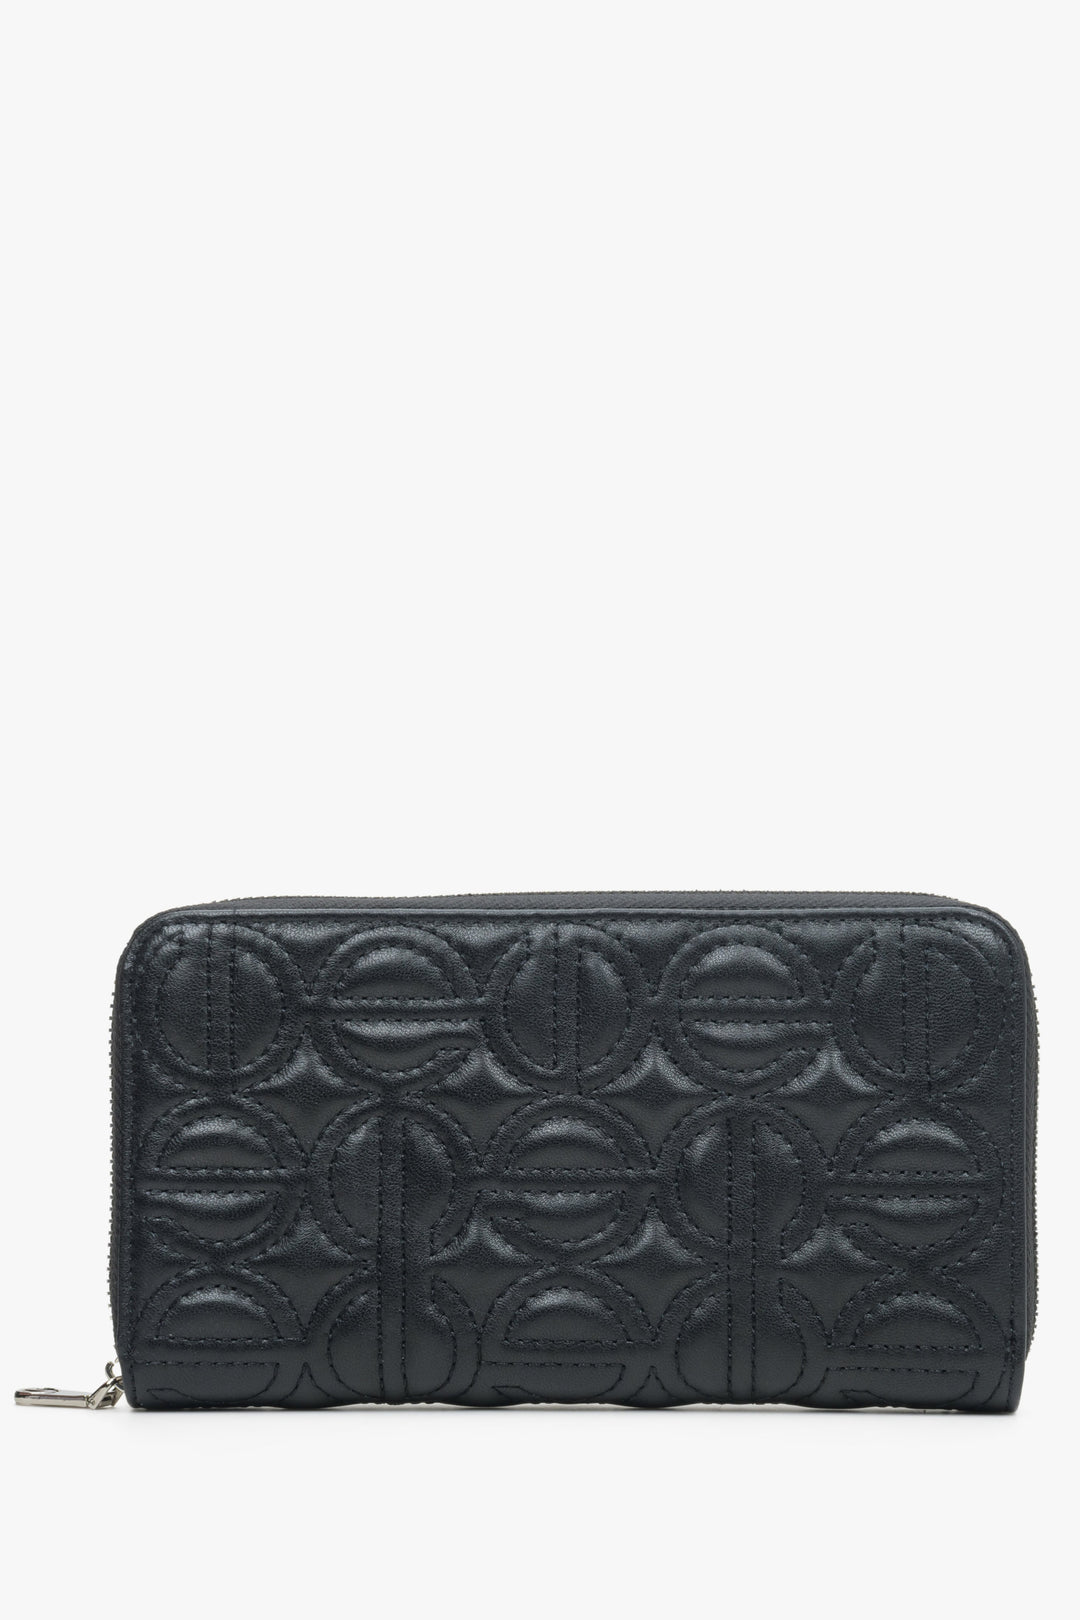 Duży, czarny portfel damski z suwakiem marki Estro.